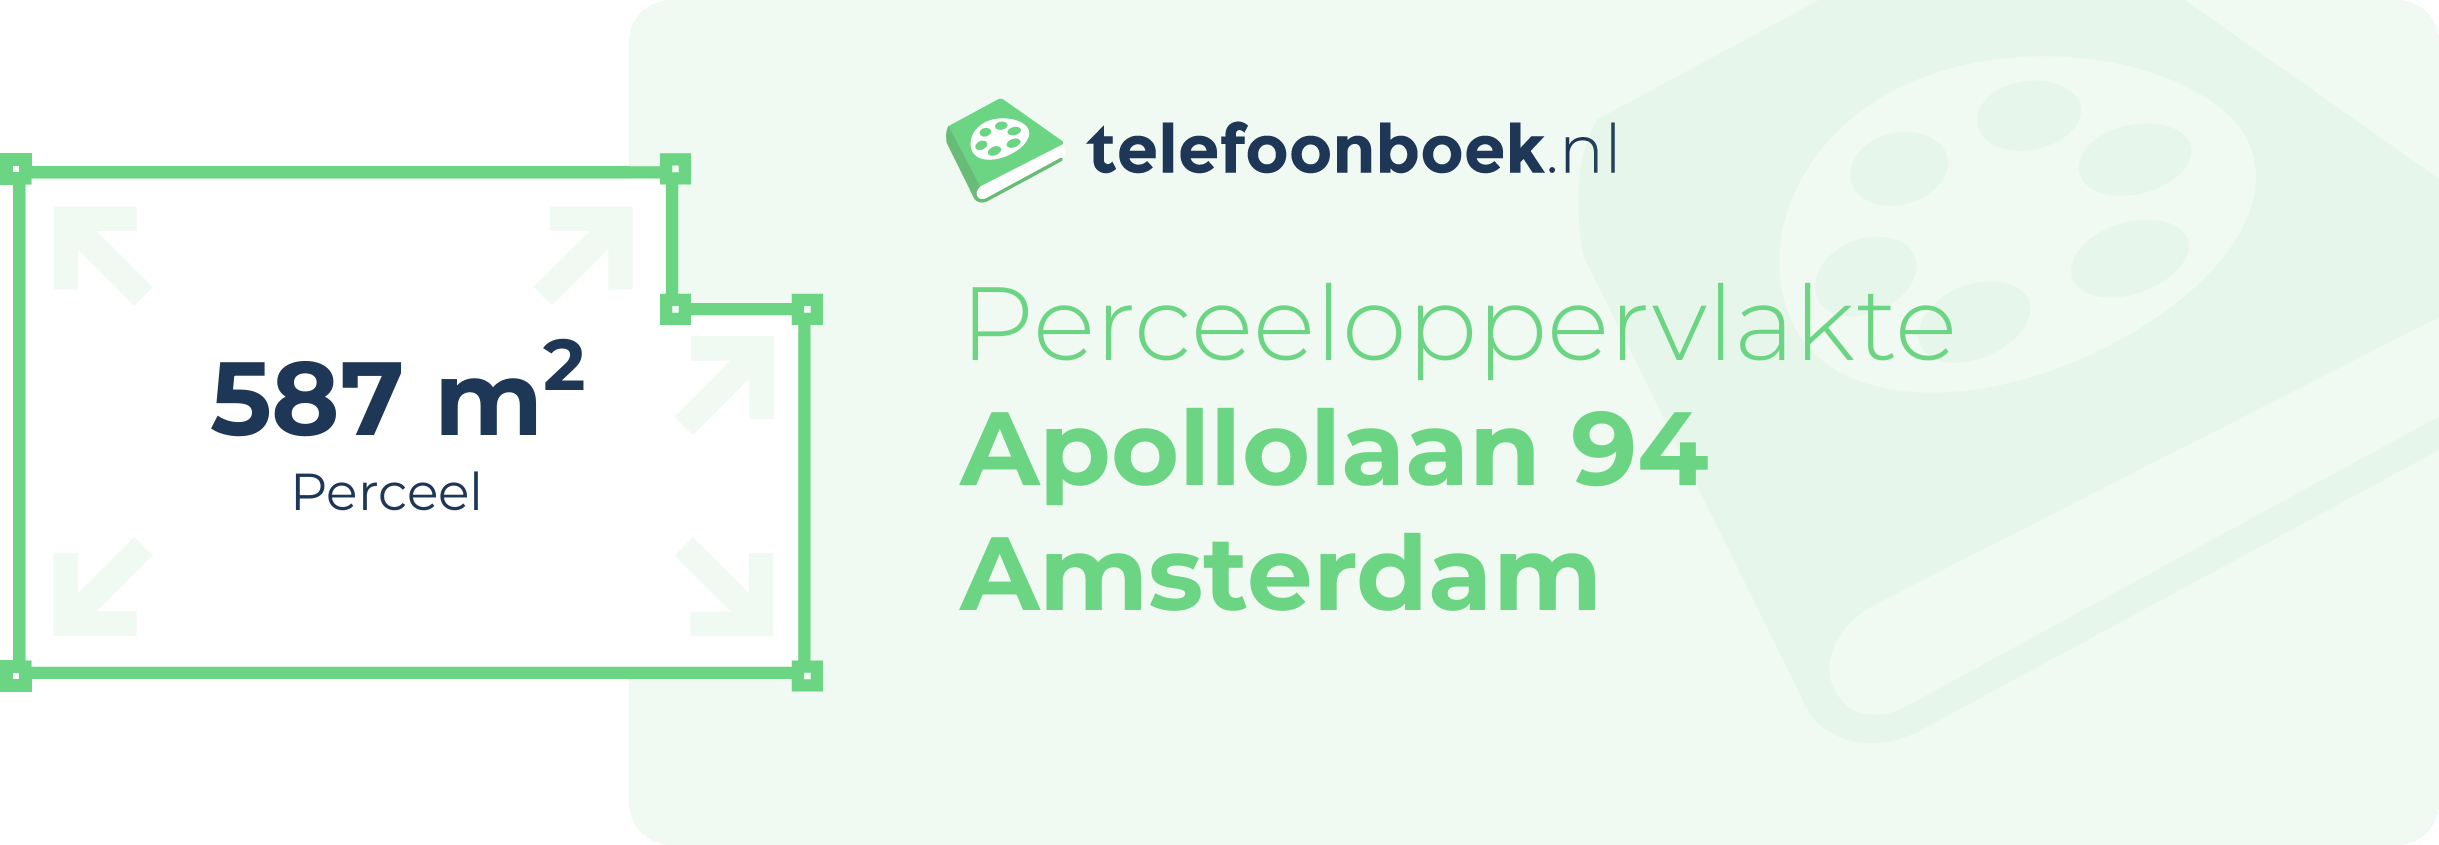 Perceeloppervlakte Apollolaan 94 Amsterdam